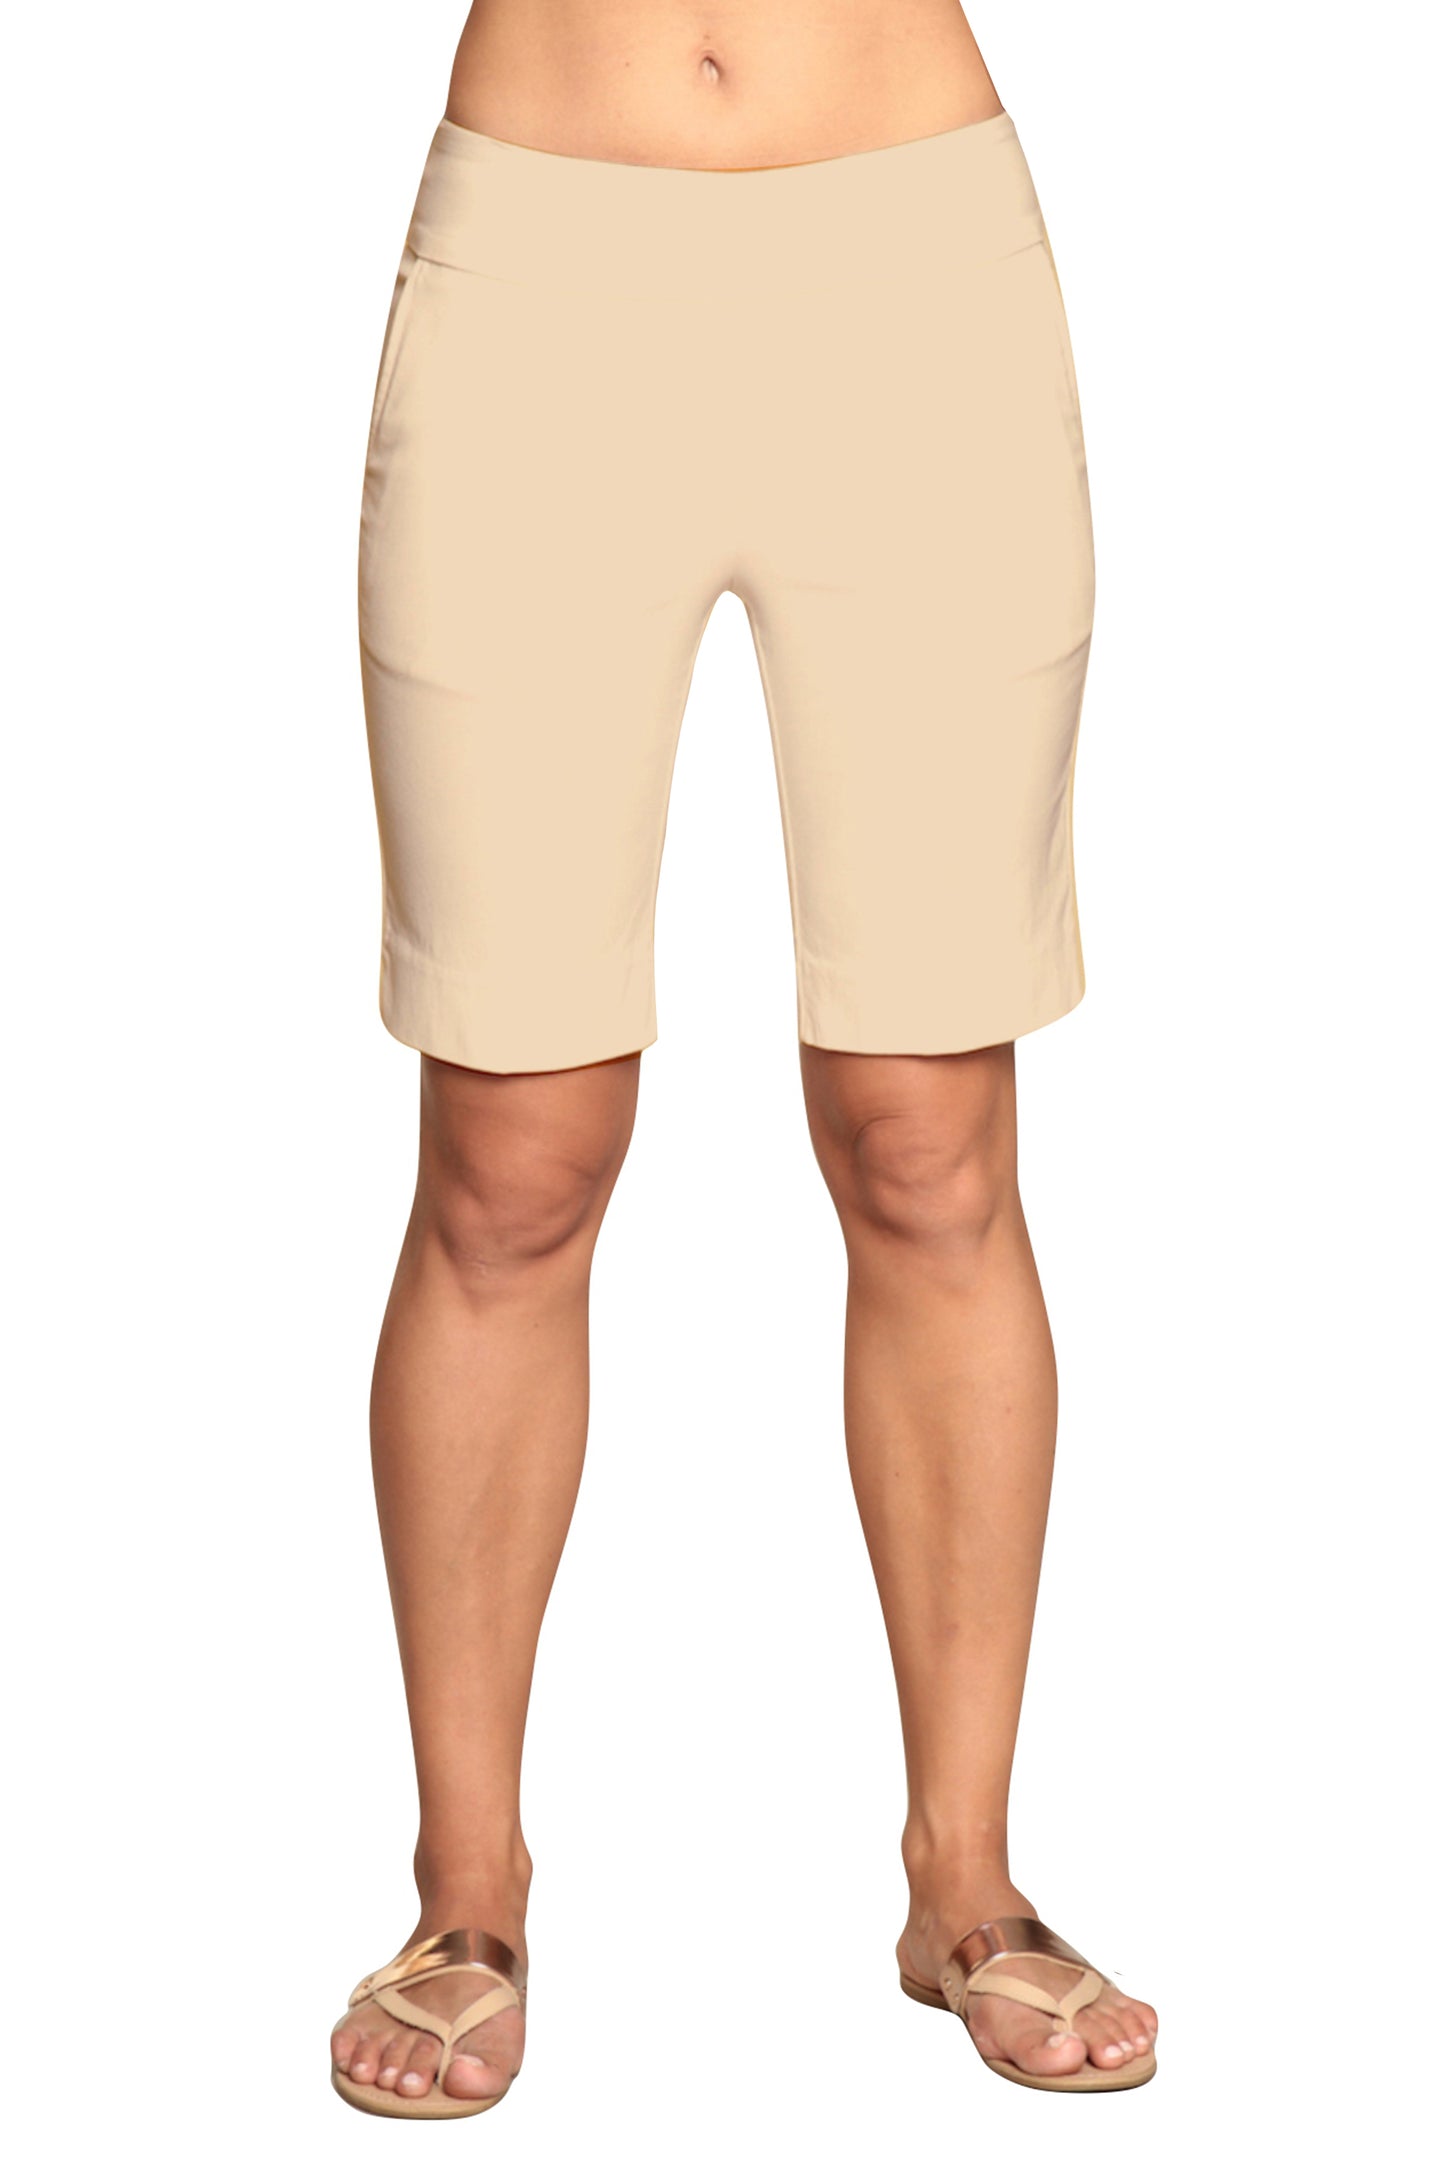 women's white golf shorts